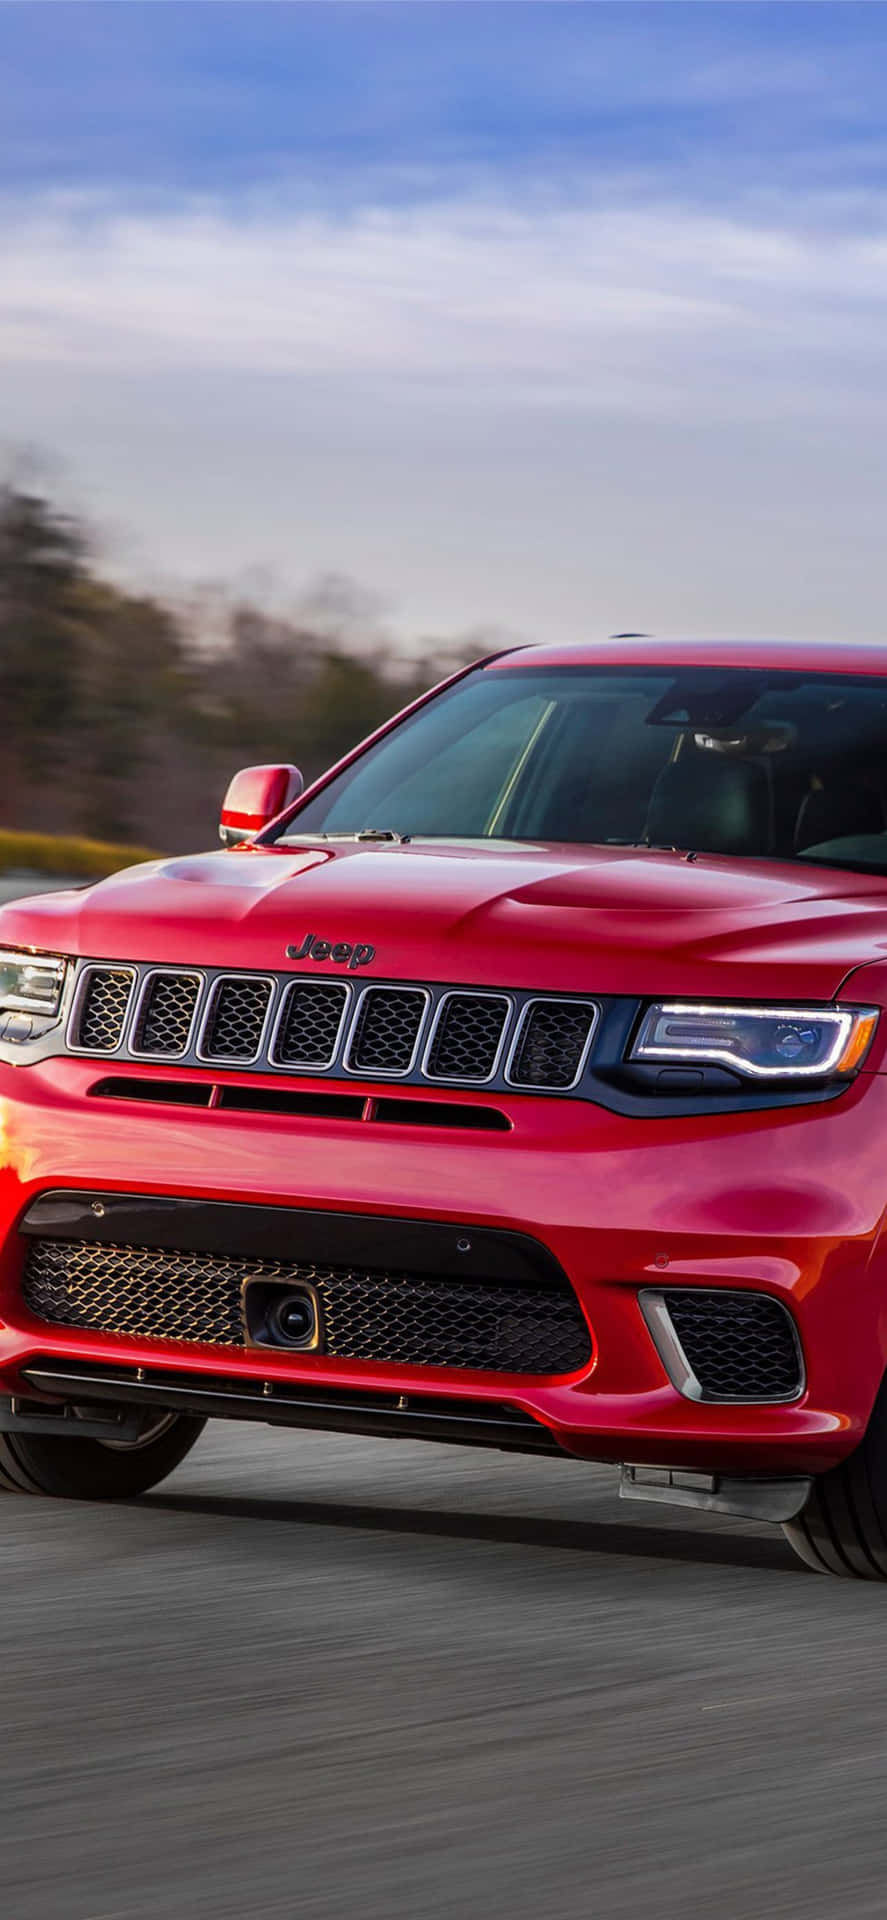 Den røde 2019 Jeep Grand Cherokee kører ned ad vejen. Wallpaper